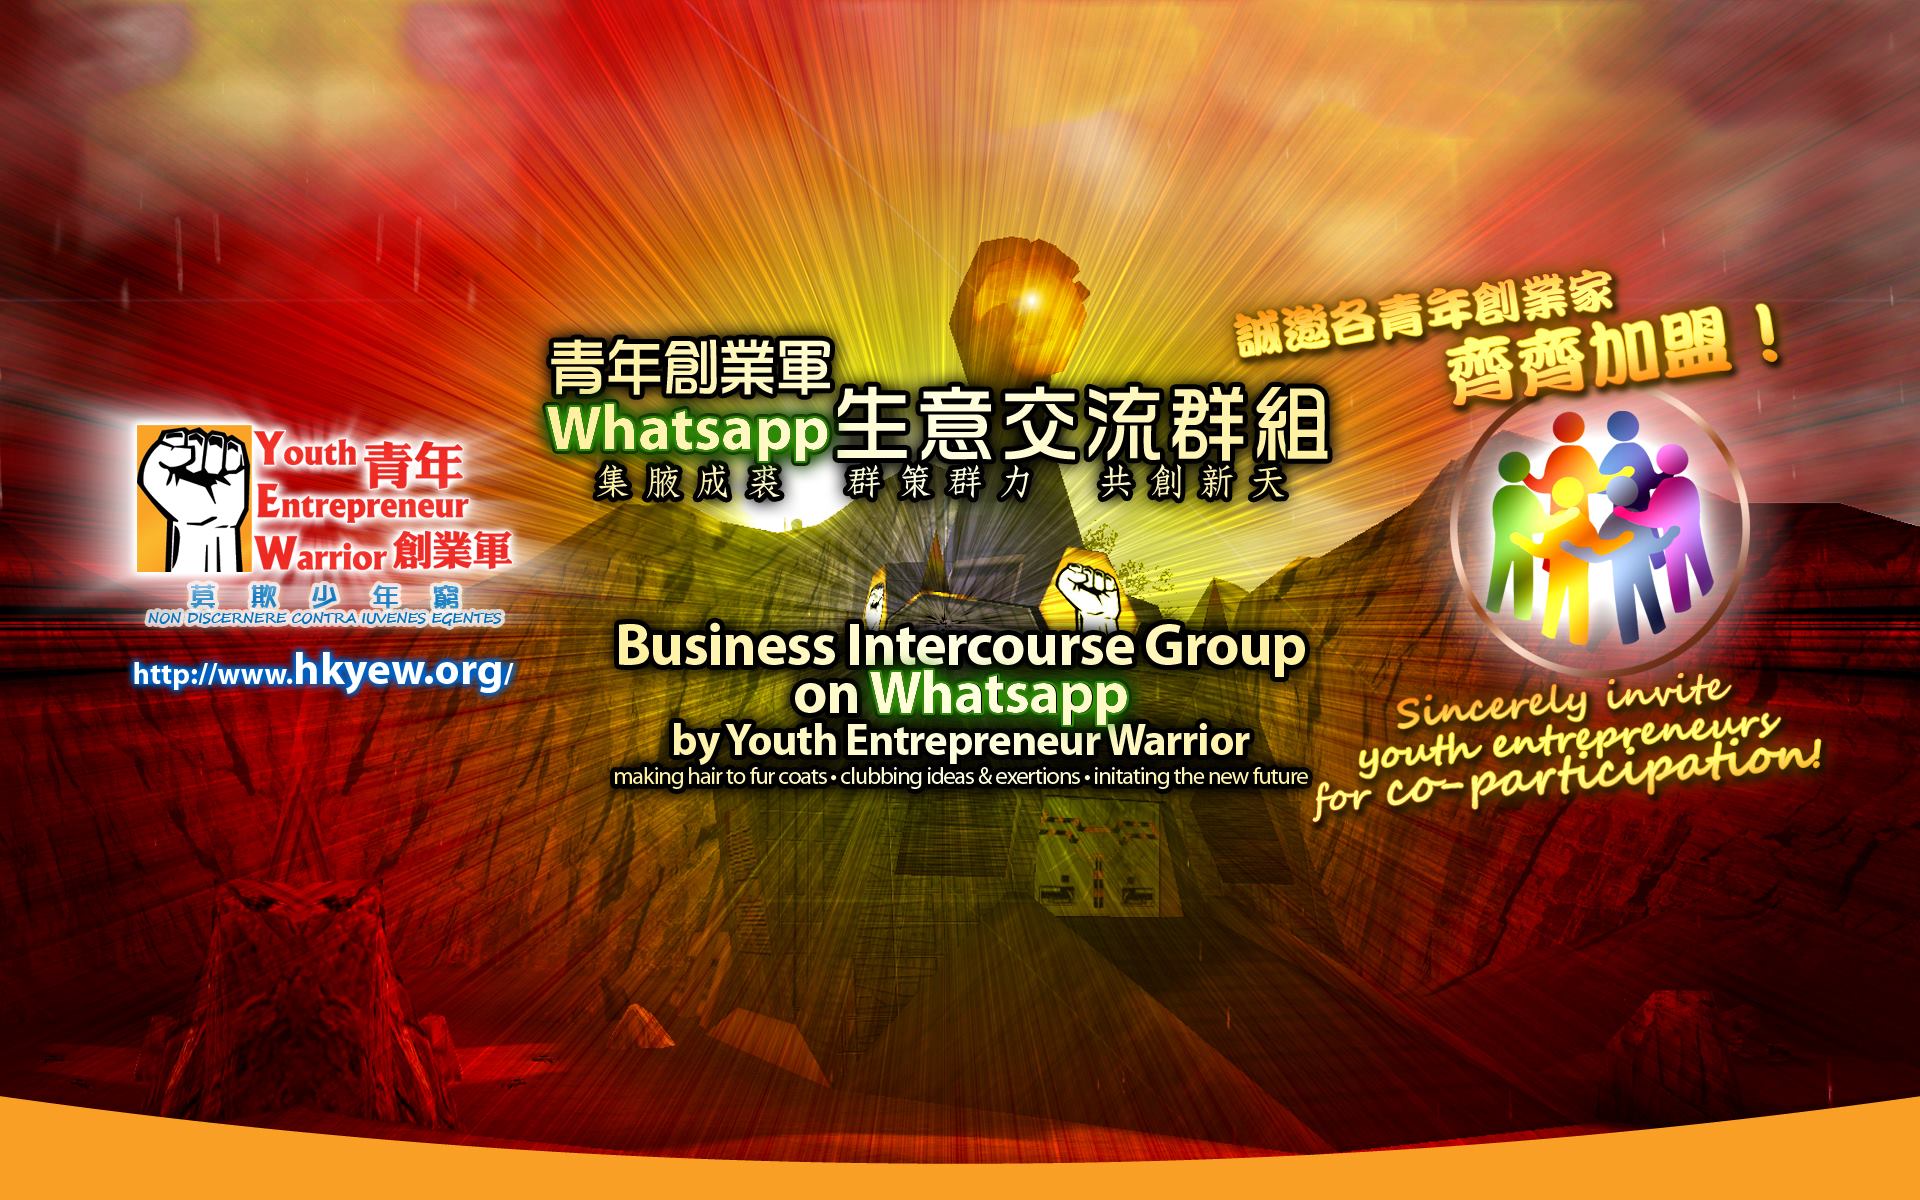 青年創業軍最新創業活動: 青年創業軍 Whatsapp 生意交流群組，誠邀各青年創業家一齊加入!